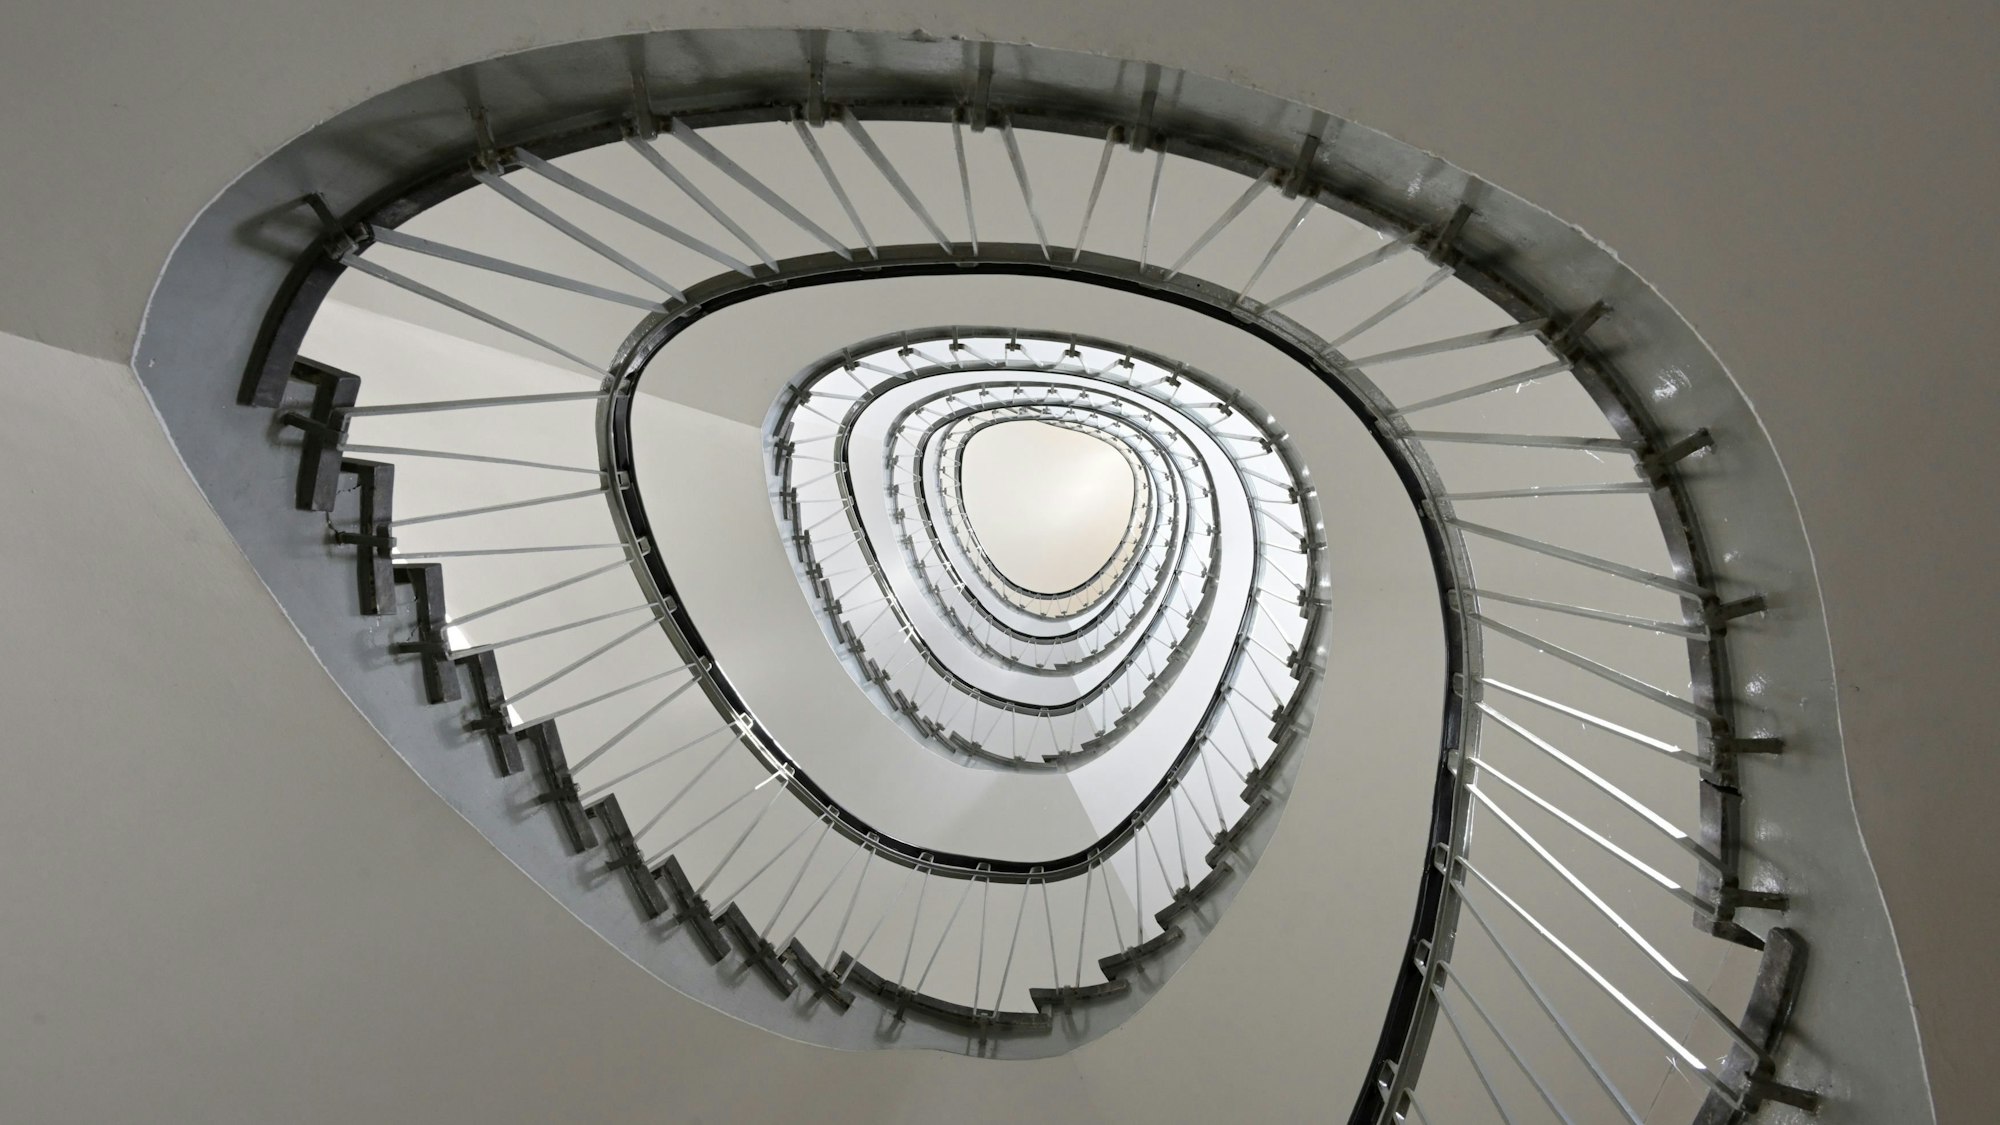 Ein Treppenhaus, dass sicn wie eine Spirale nach oben windet.